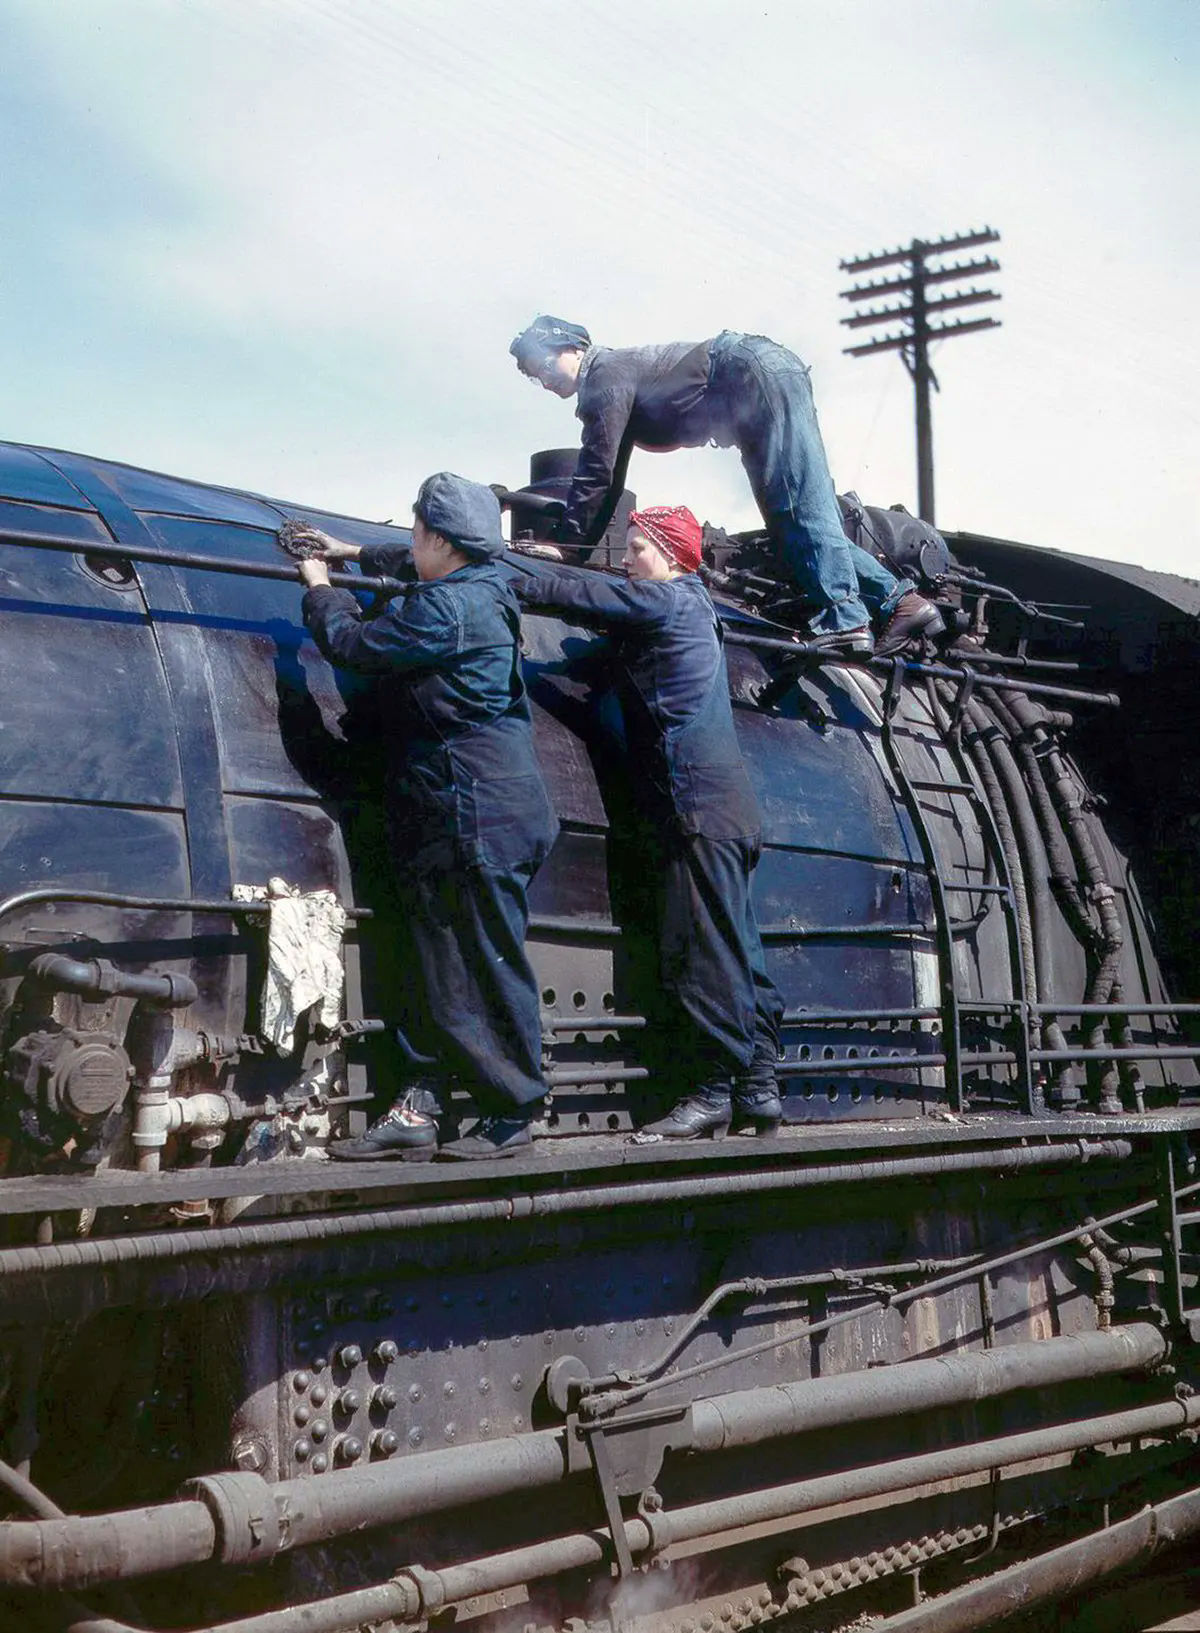 Incríveis fotos coloridas mostram trabalhadoras ferroviárias que mobilizaram o esforço de guerra em 1943 03